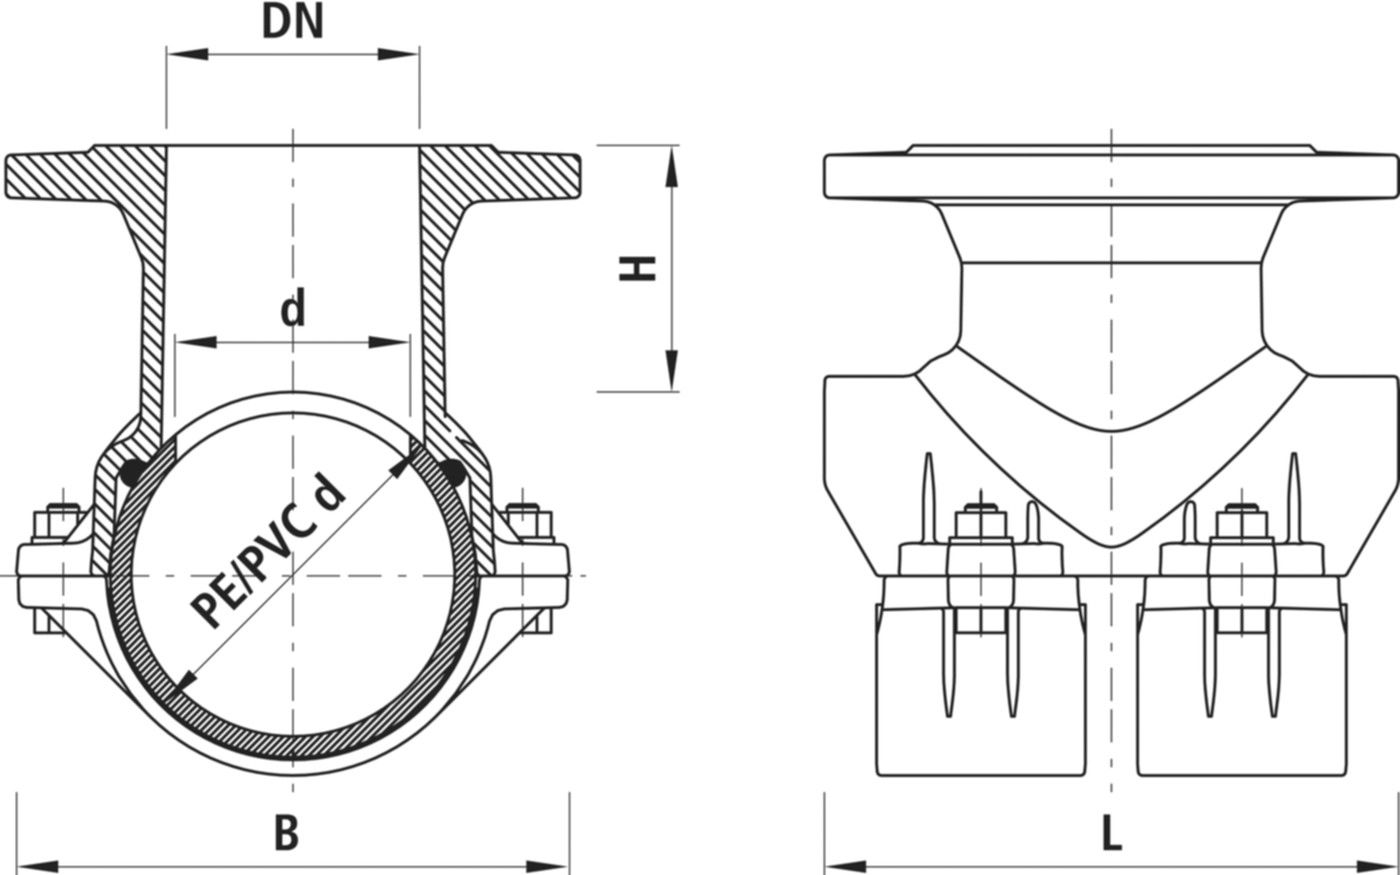 Haku-Anbohrschelle mit Flansch 5230 d 110mm / DN 80 - Hawle Hausanschluss- und Anbohrarmaturen